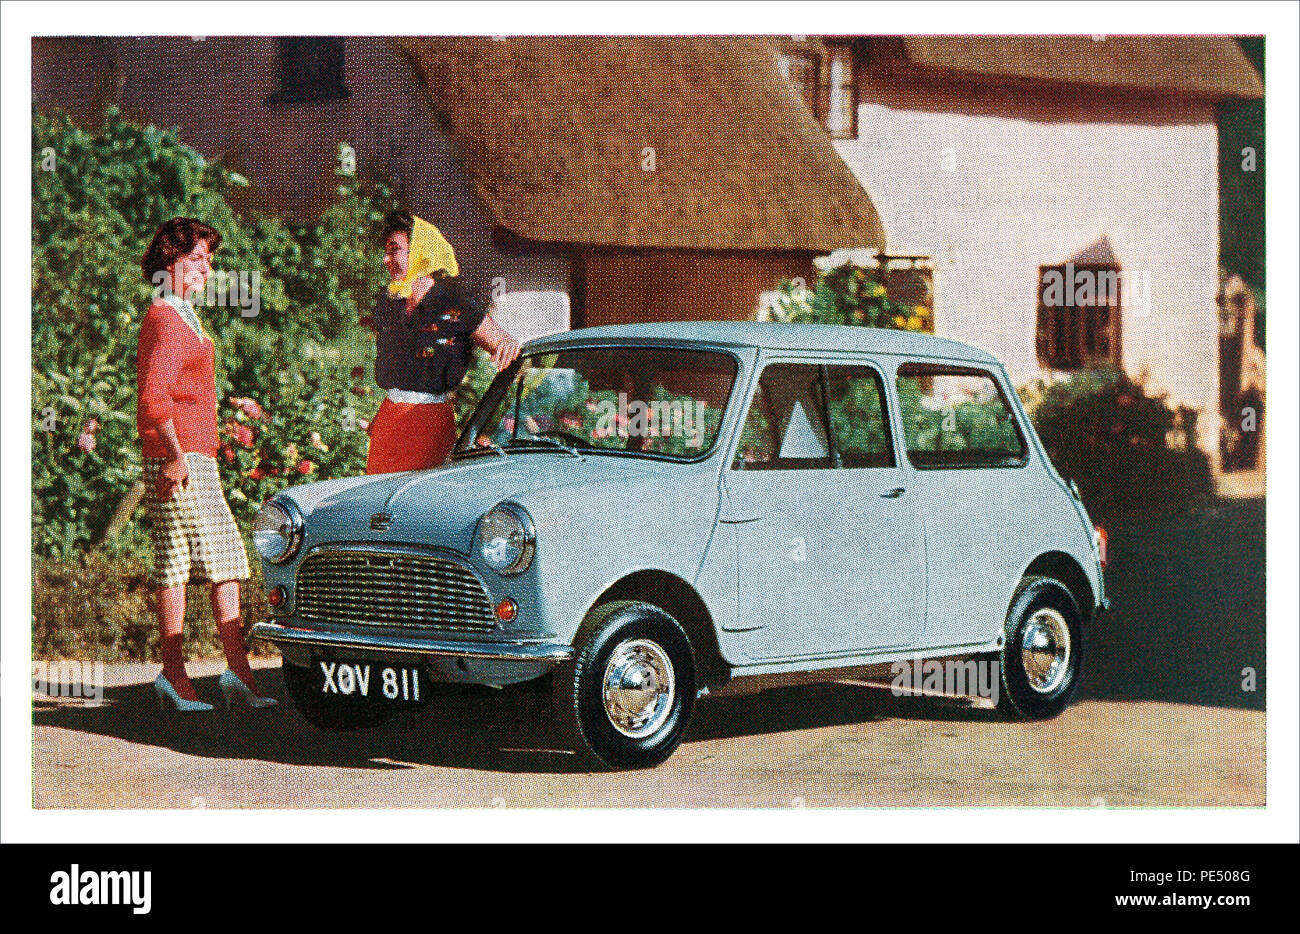 Vintage Cartolina pubblicitaria per la Austin sette mini automobile. Foto Stock